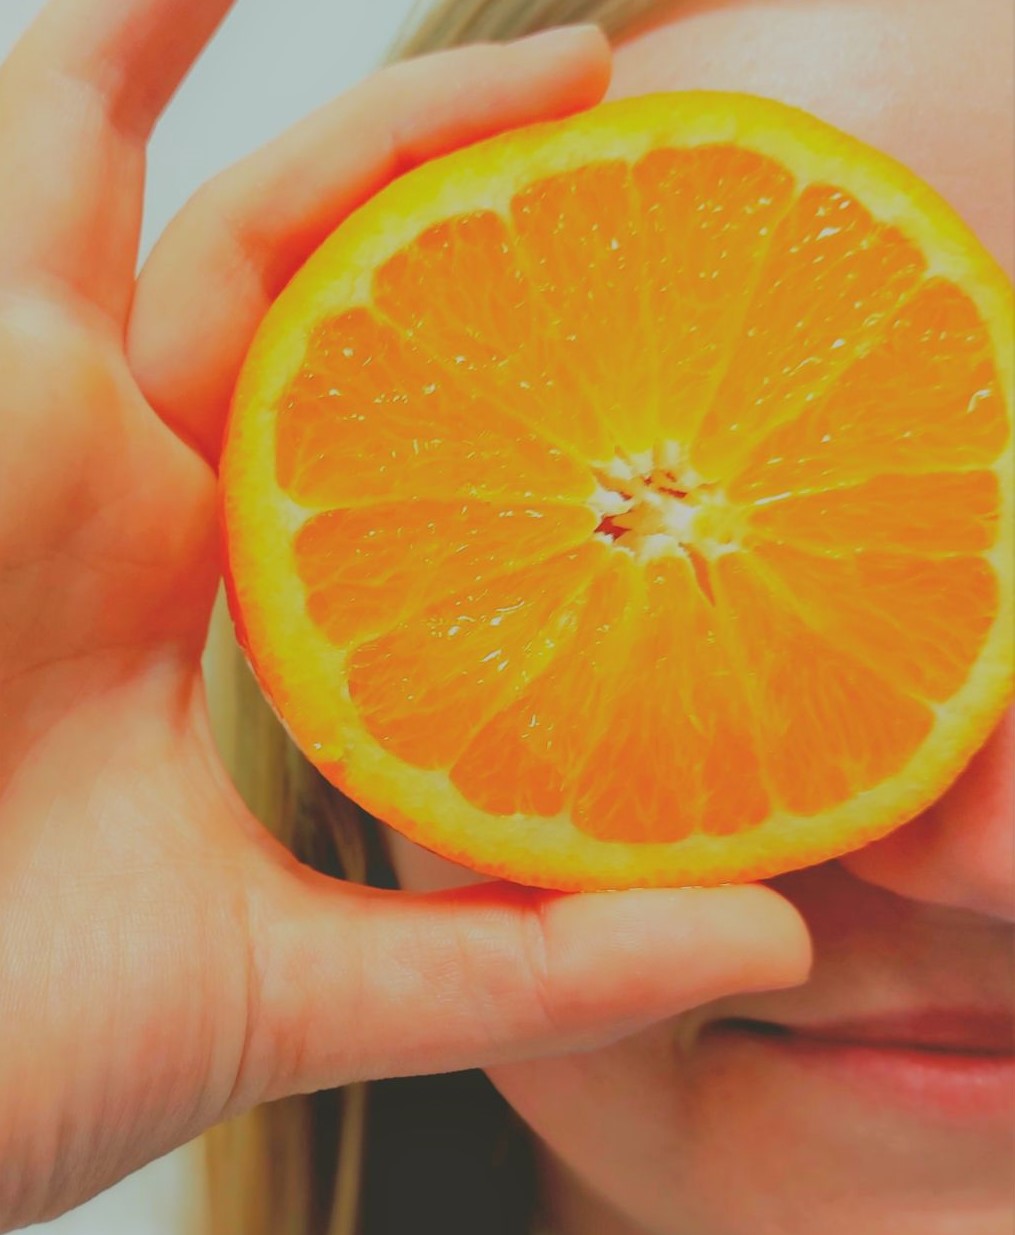 Abgebildet ist eine Person, die sich eine Orangenscheibe vor das Auge hält.